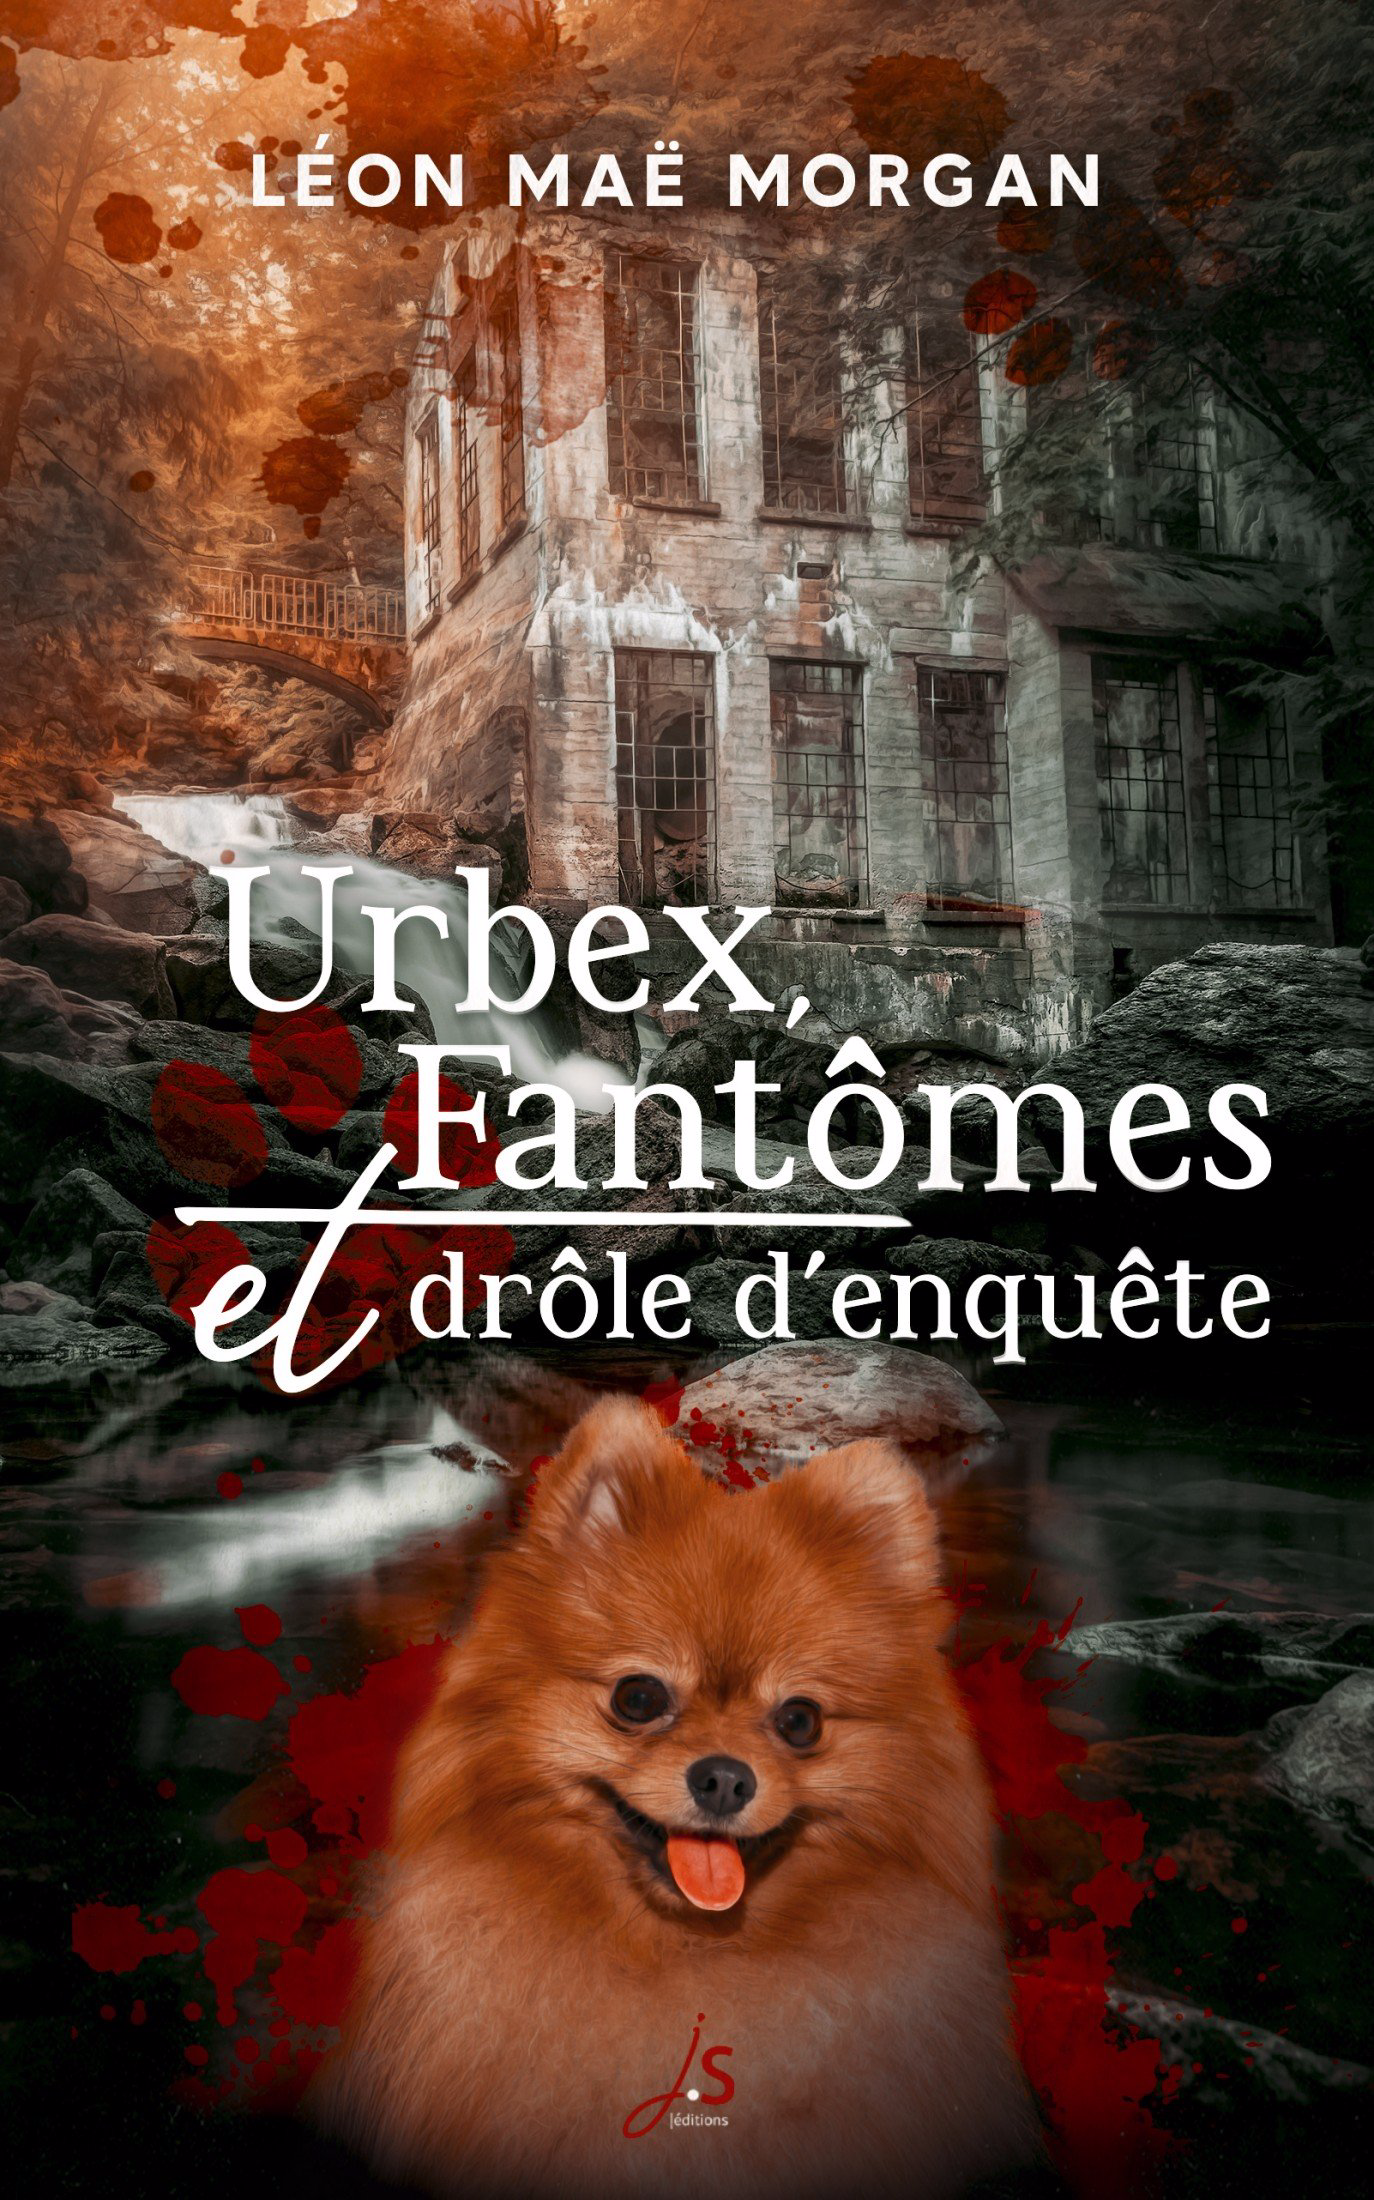 Couverture du roman de Léon Maë Morgan : Urbex, fantômes et drôle d'enquête. Sur une photo d'une maison abandonnée dans une forêt, au bord d'une rivière, la tête d'un chien spitz nain en photobombing sur des tâches de sang.